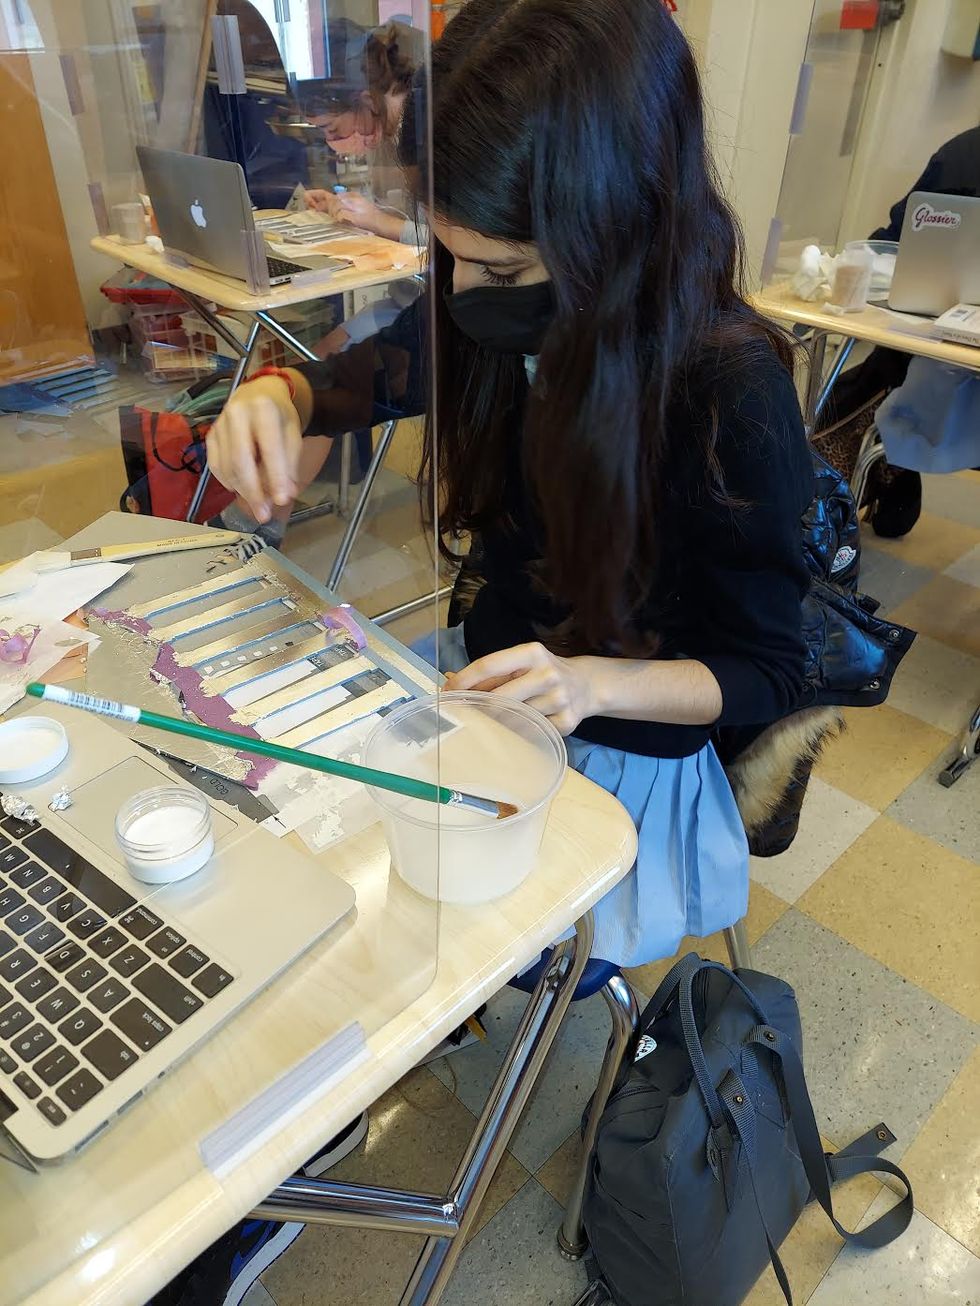 girl at computer